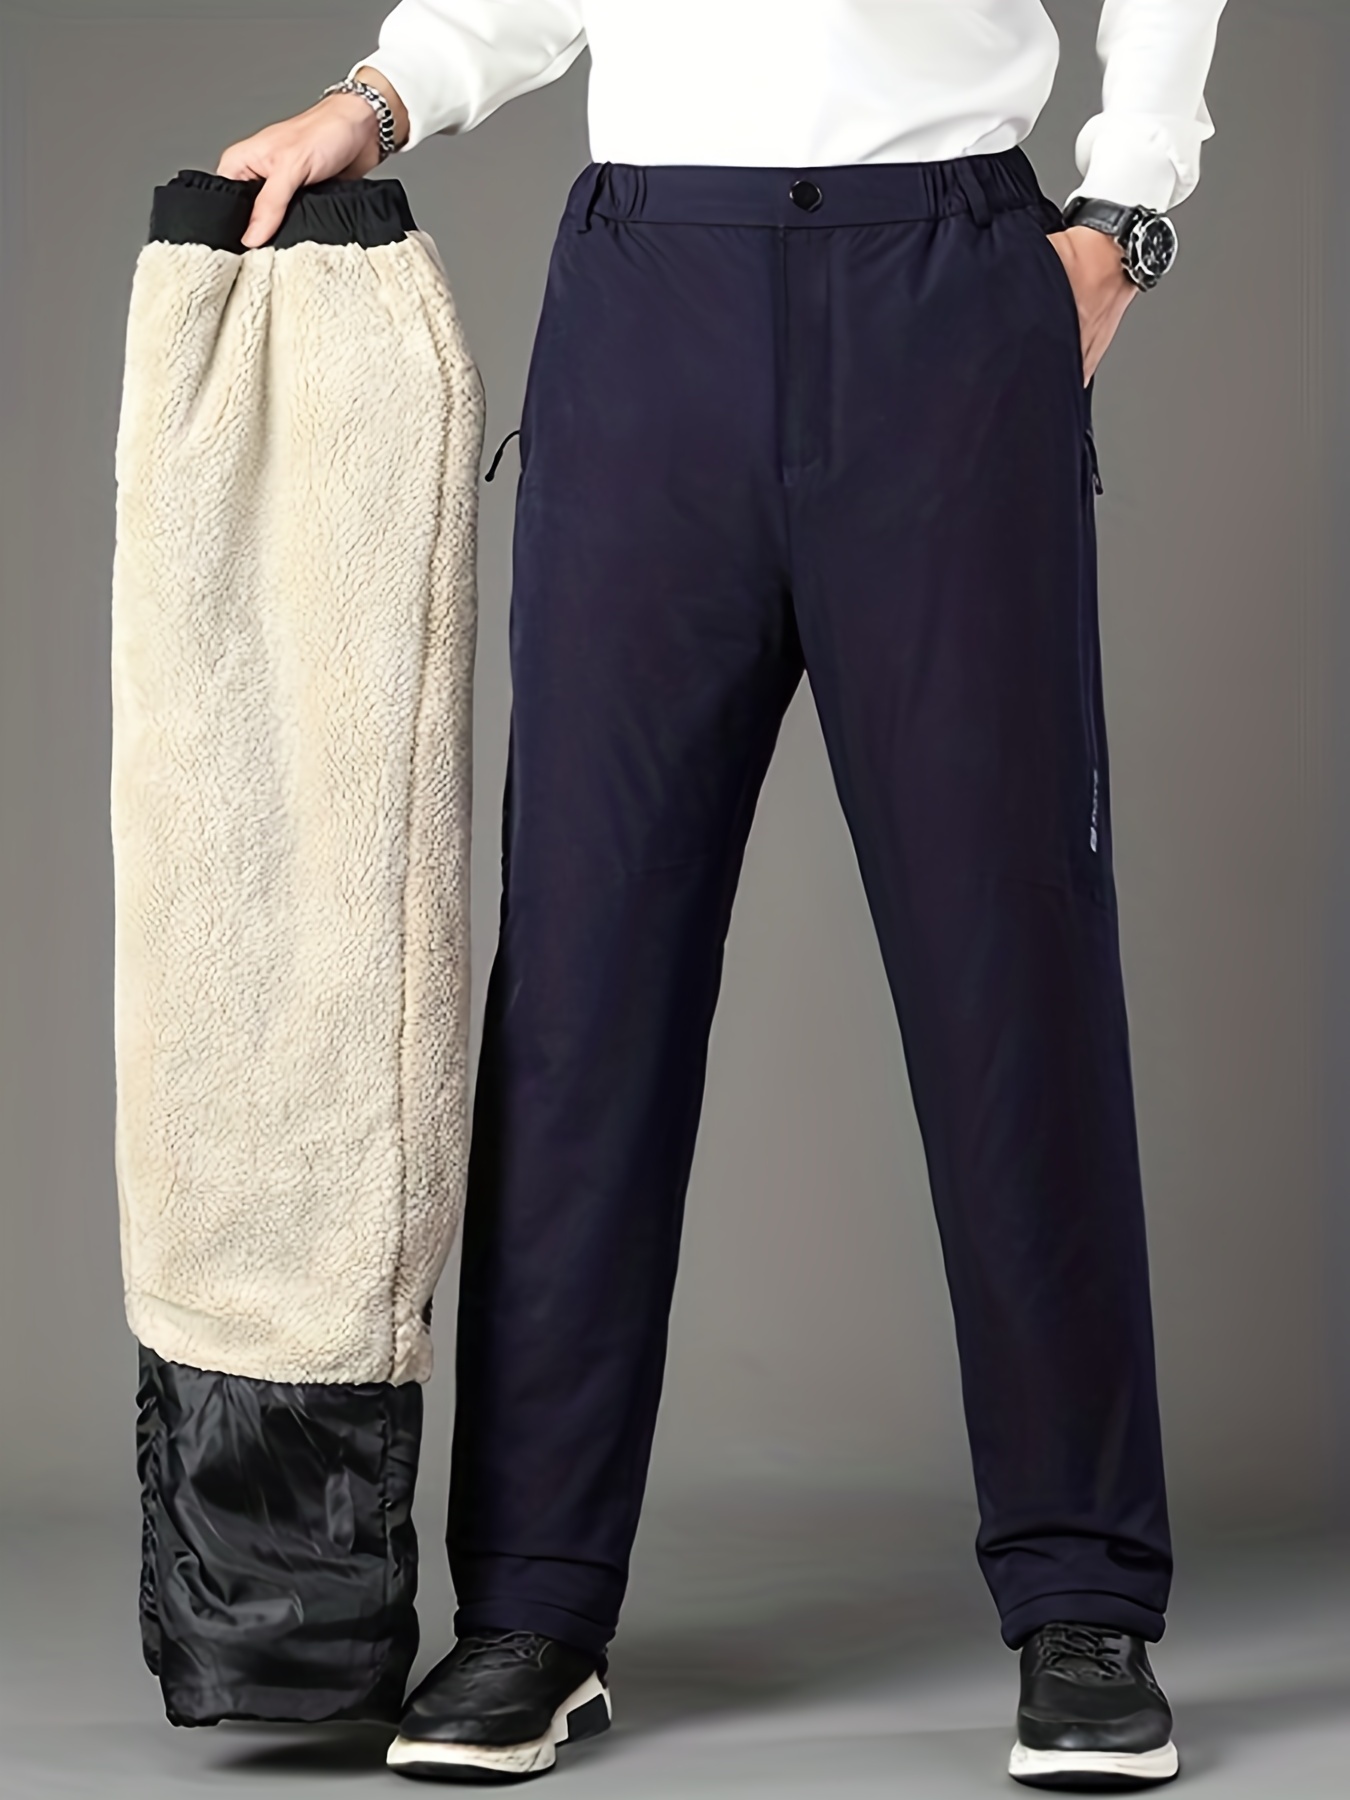 Pantalones Térmicos Forro Polar Hombre Casuales Cordón Recto